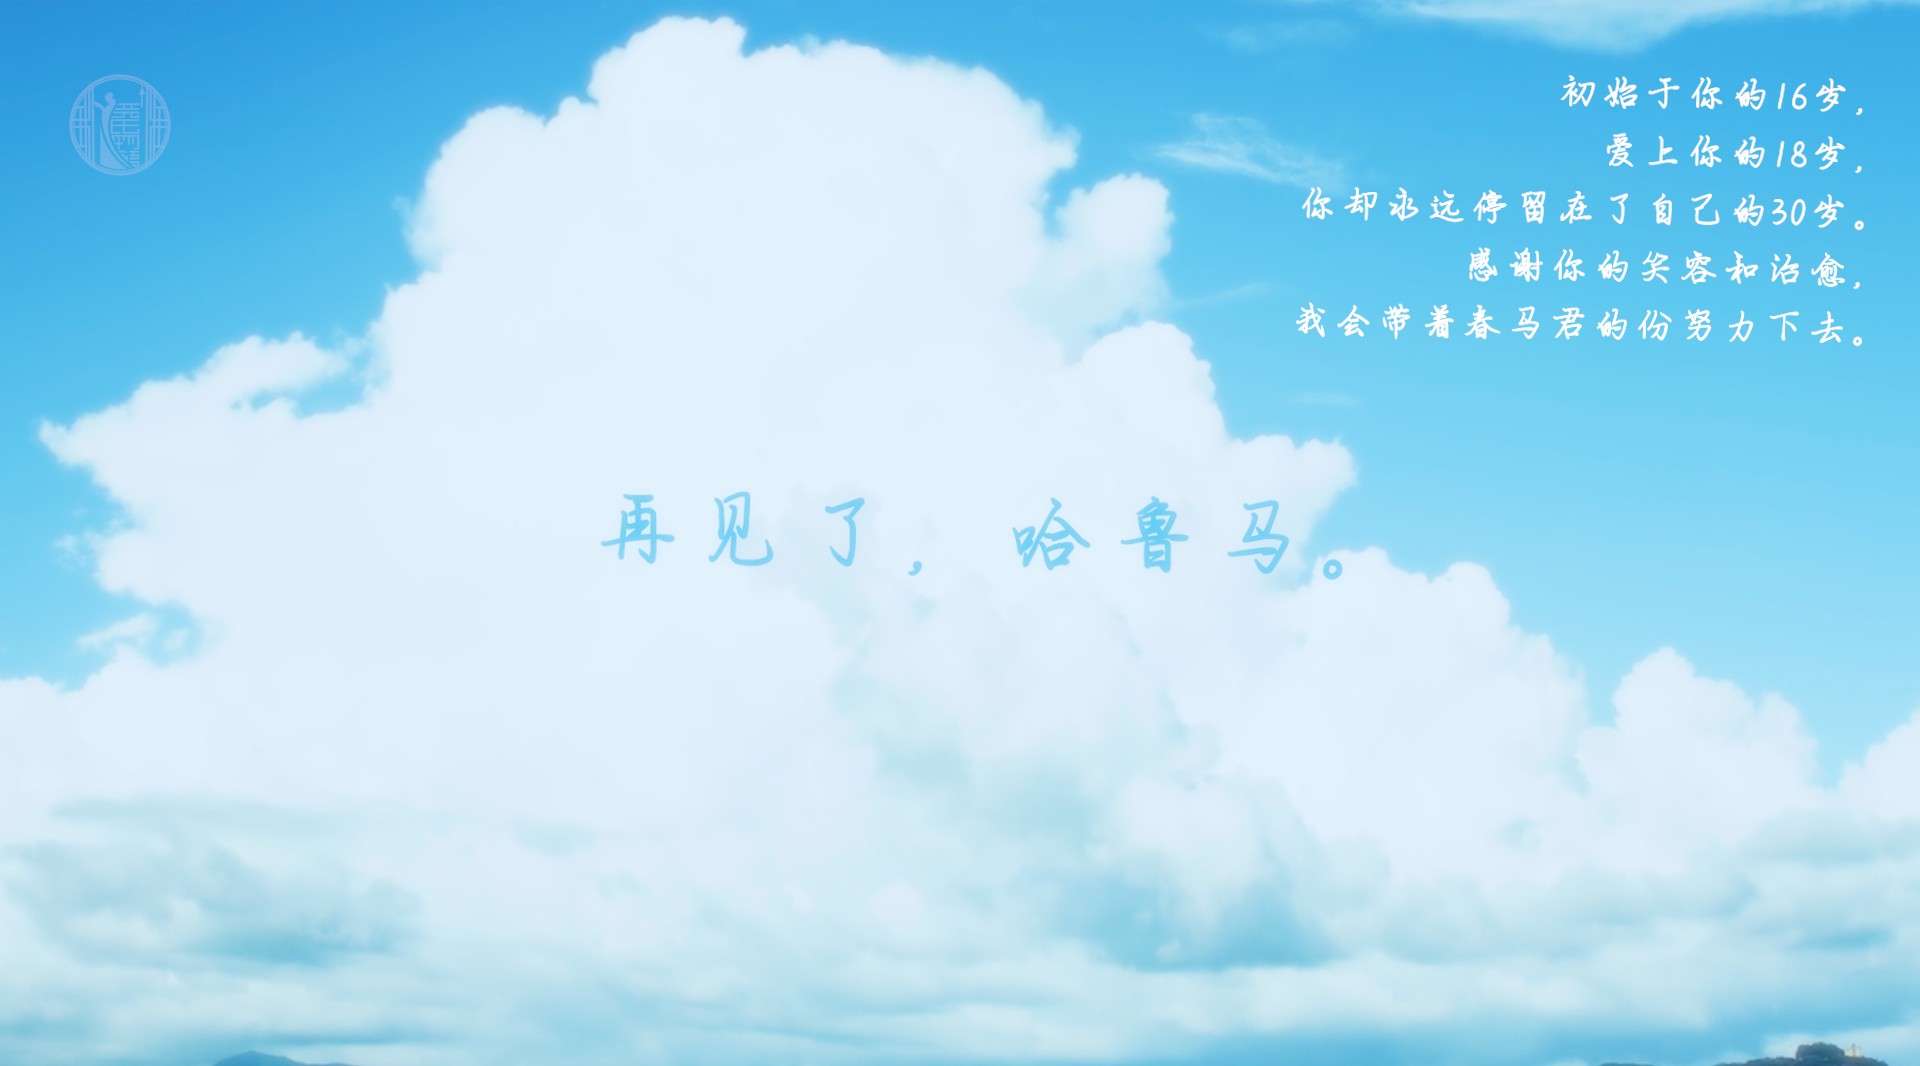 【三浦春马／日影／恋空】再见了弘树，我还会继续和天空相恋